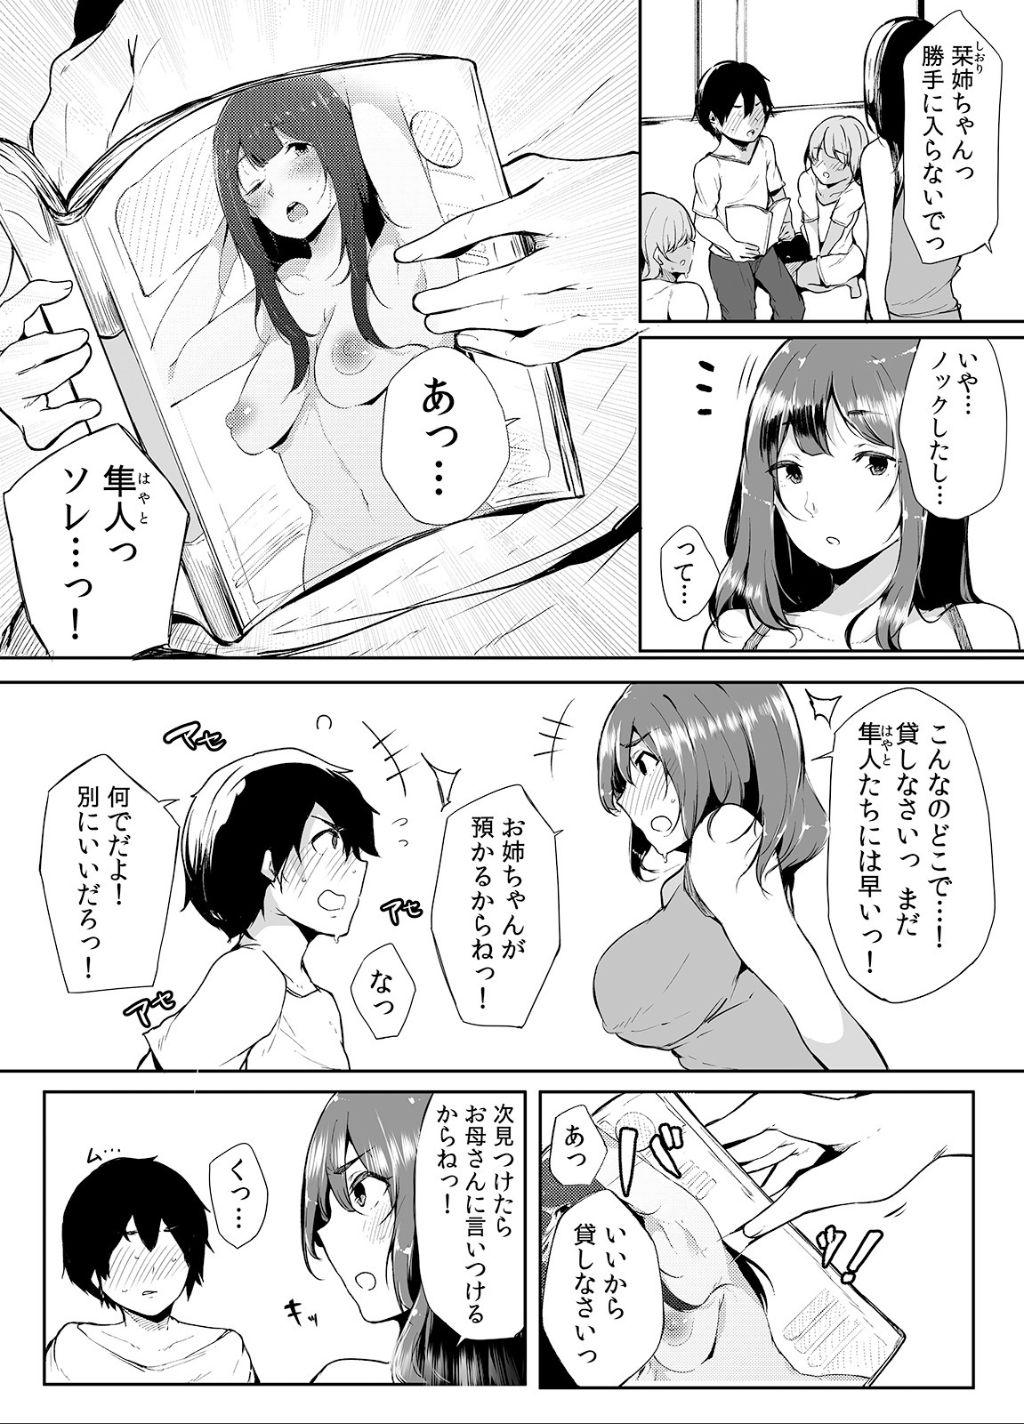 Feet Otouto ni Ero Manga to Onaji Koto o Sare Chau o Nee-chan no Hanashi 1 - Original Stepdad - Page 5